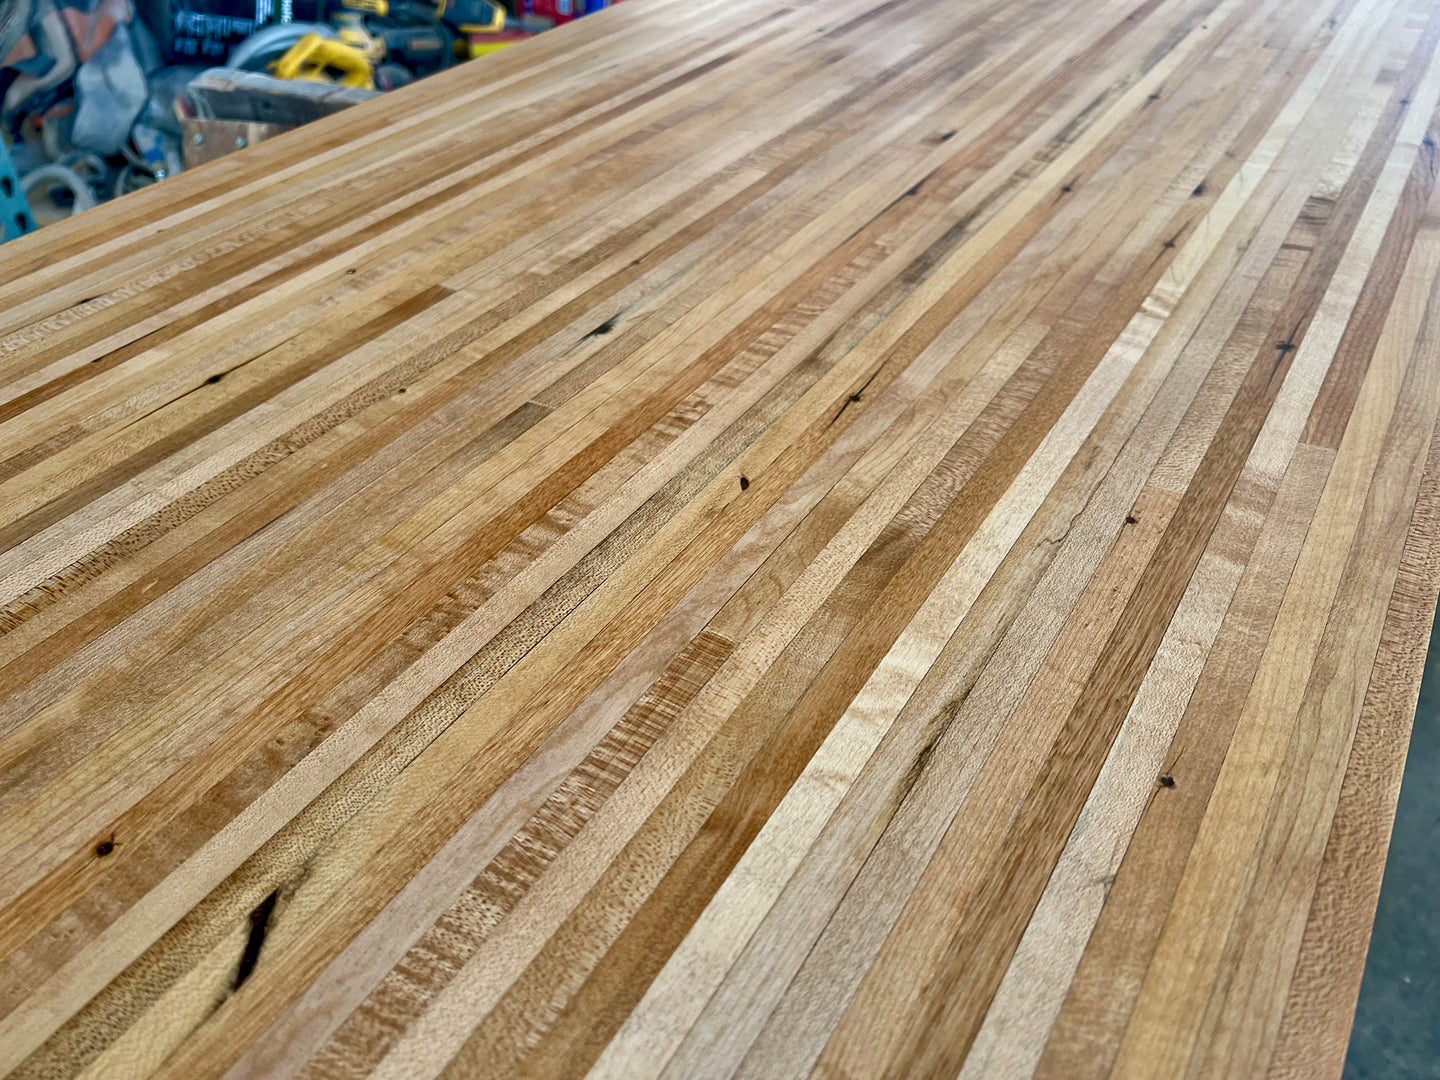 Reclaimed Maple Edge Grain Wood Butcher Block Countertop